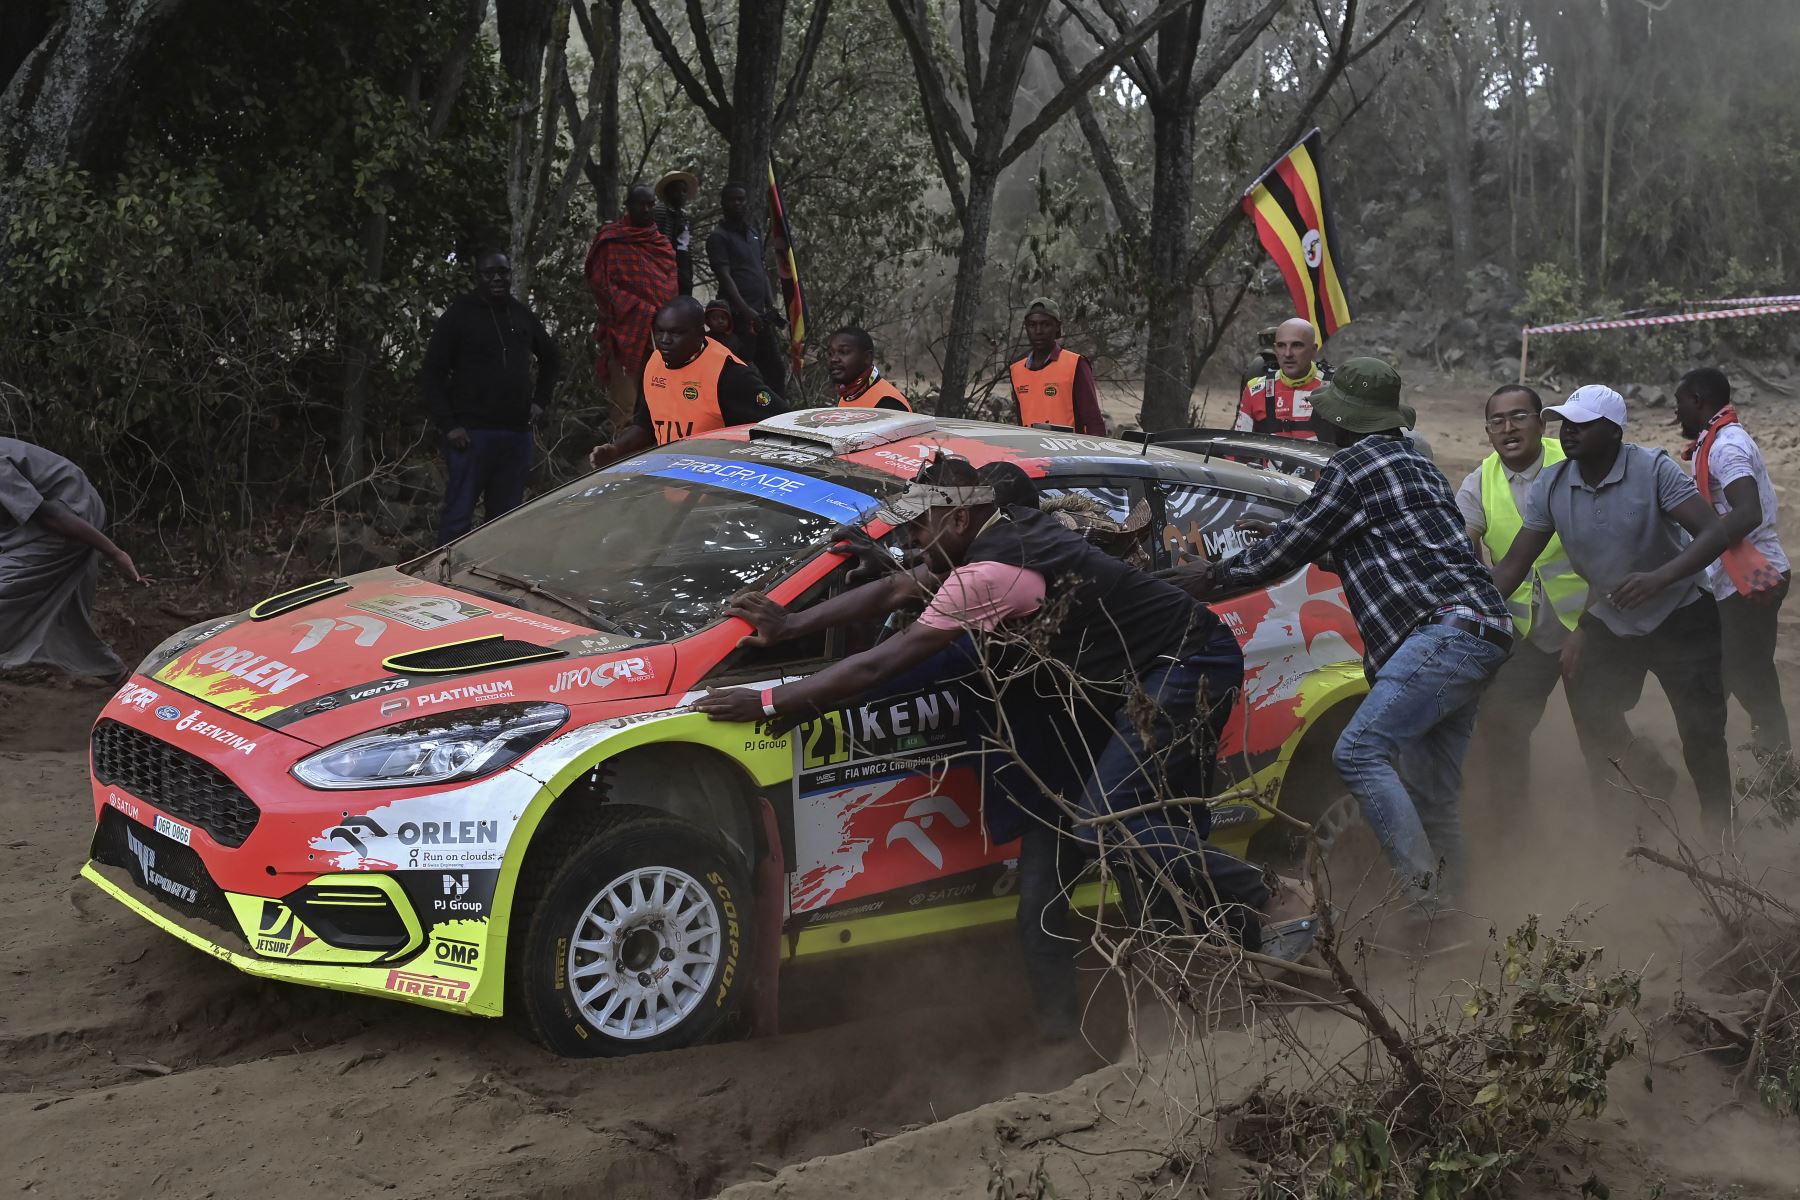 Los espectadores ayudan a sacar del curso al Ford Fiesta MkII del equipo de rally checo conducido por Martin Prokop y Zdenek Jurka, que se descompuso en medio del polvo durante la sección de Kedong del Safari Rally Kenya 2022. Foto: AFP